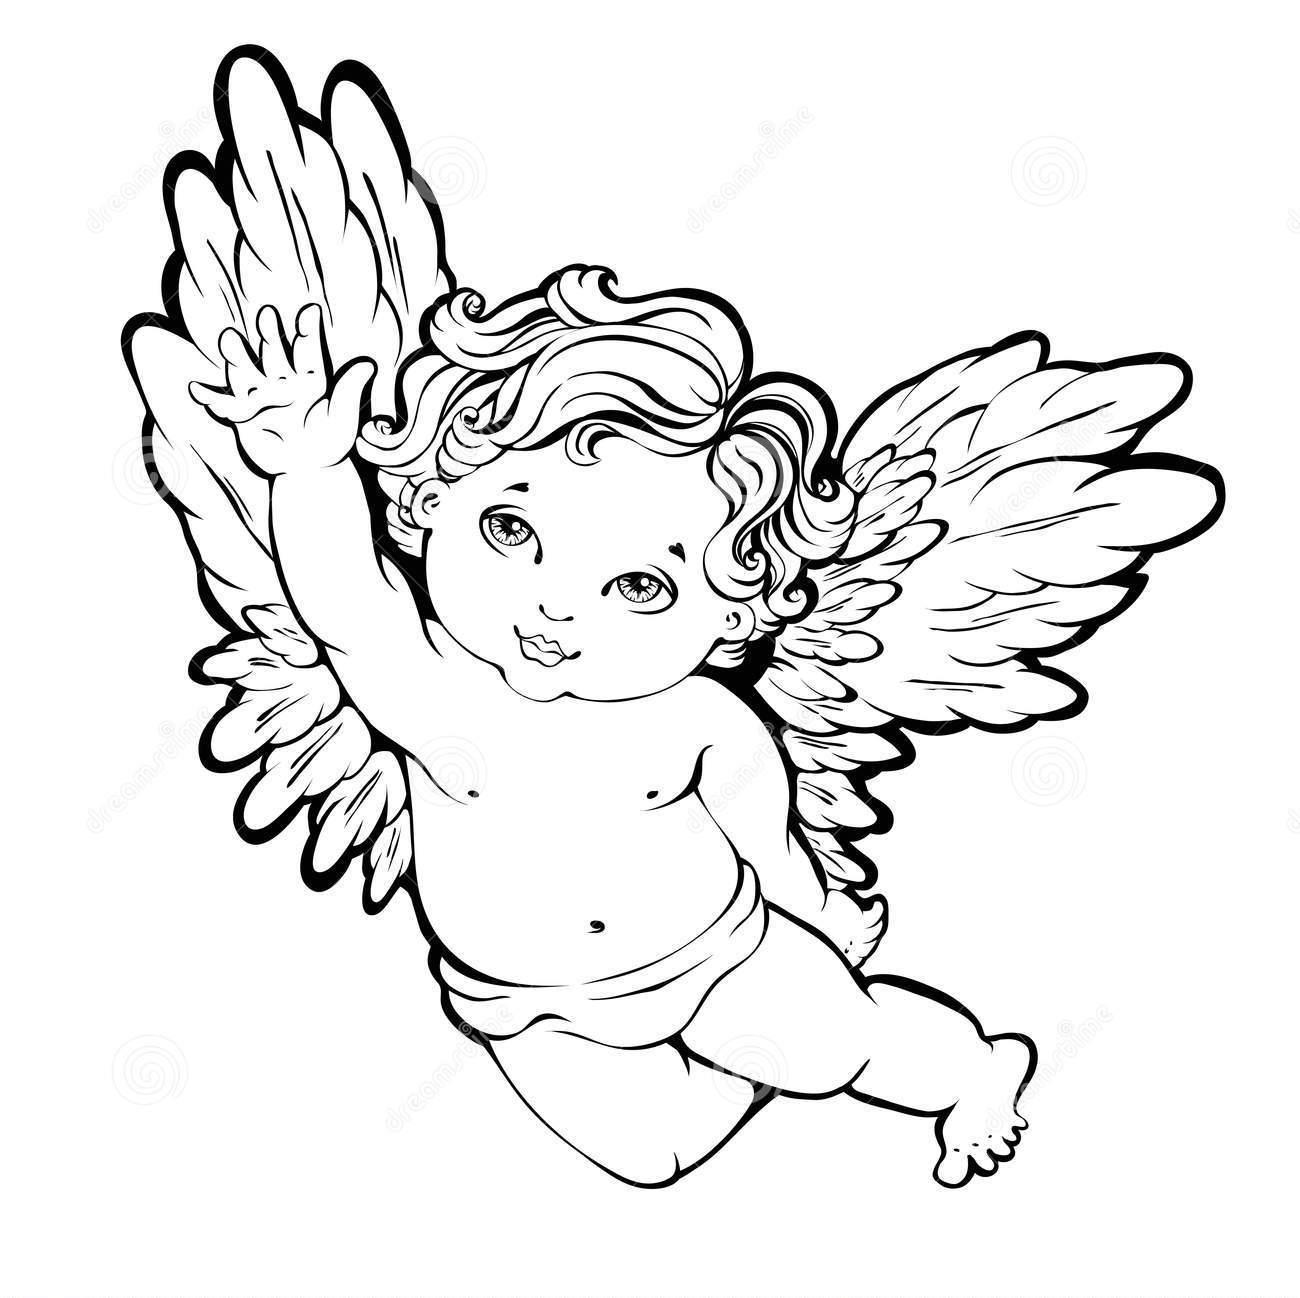 Шаблон ангелочка для рисования или вырезания, пример 1